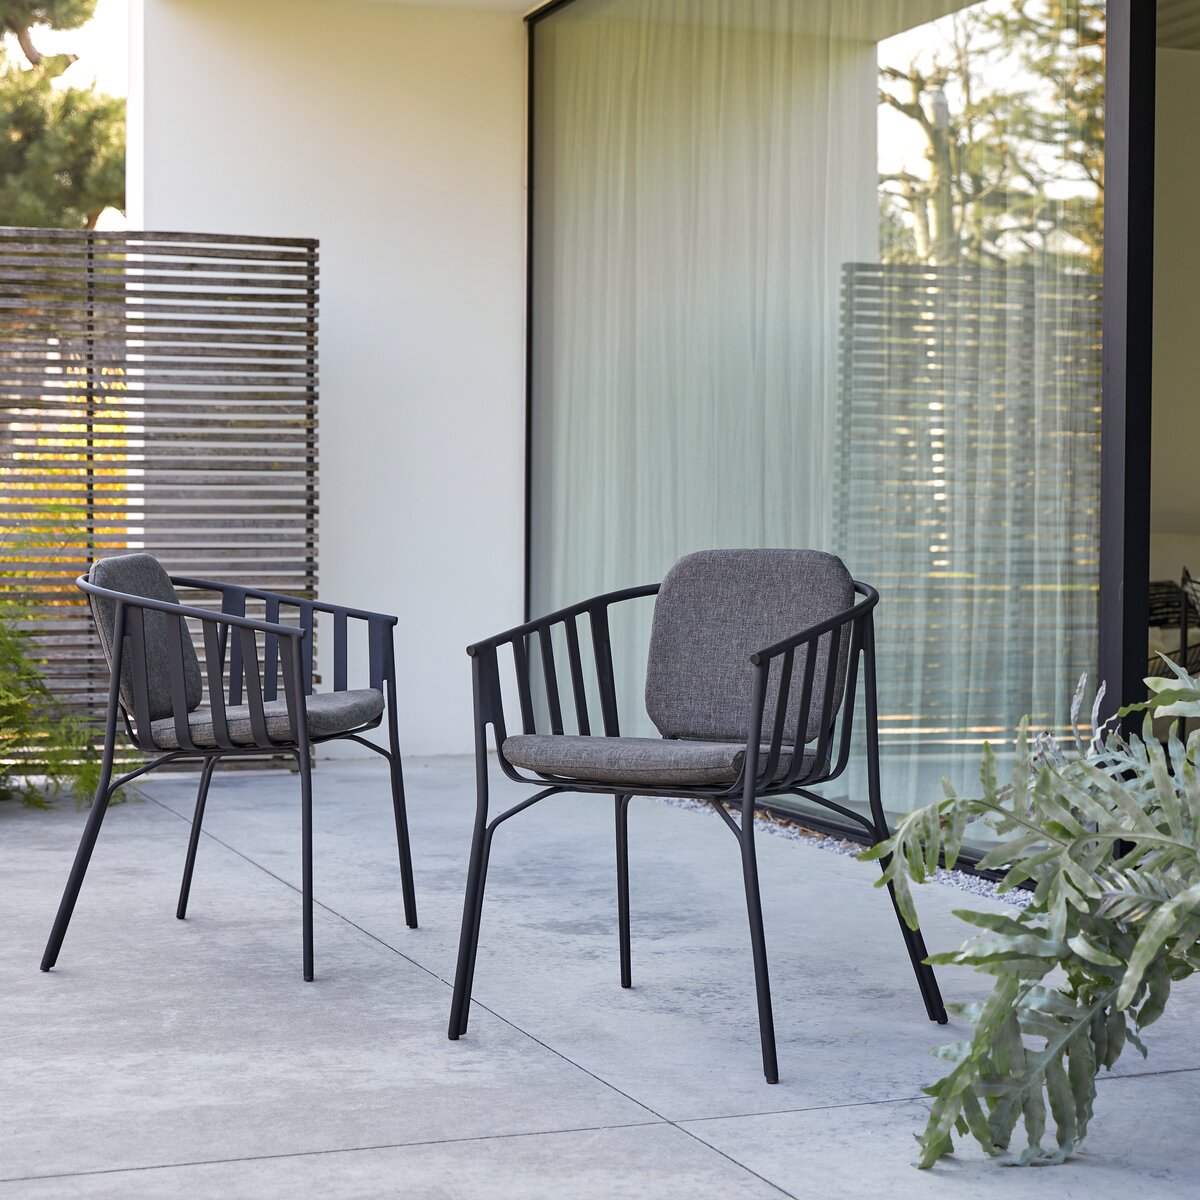 Sedia da giardino in alluminio verniciata di nero - Sedute outdoor